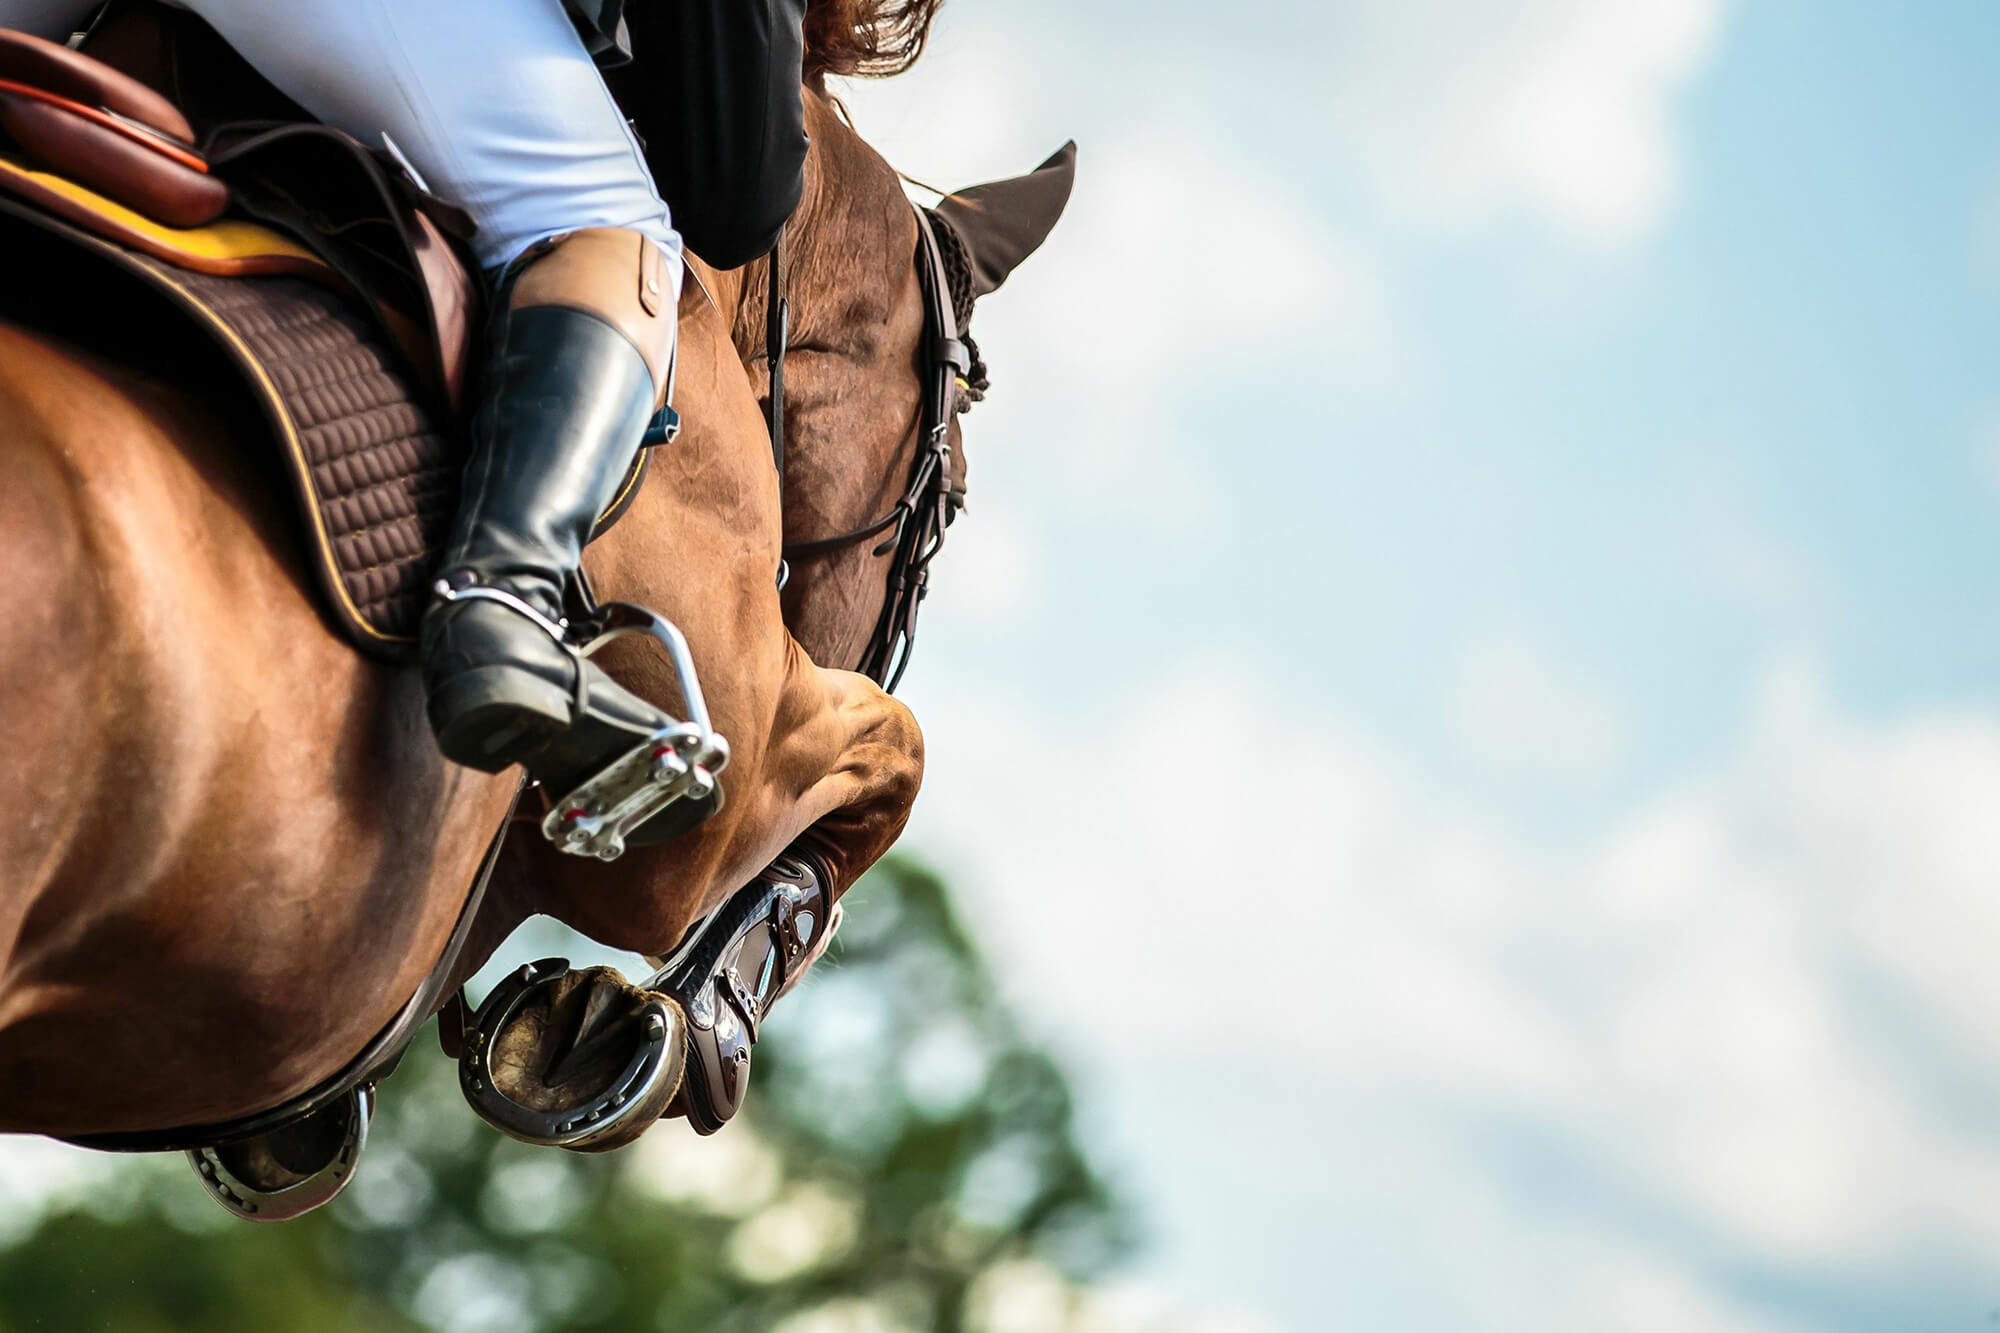 Detailansicht eines springenden Pferdes und Reiters, Fokus auf Beine und Hufe